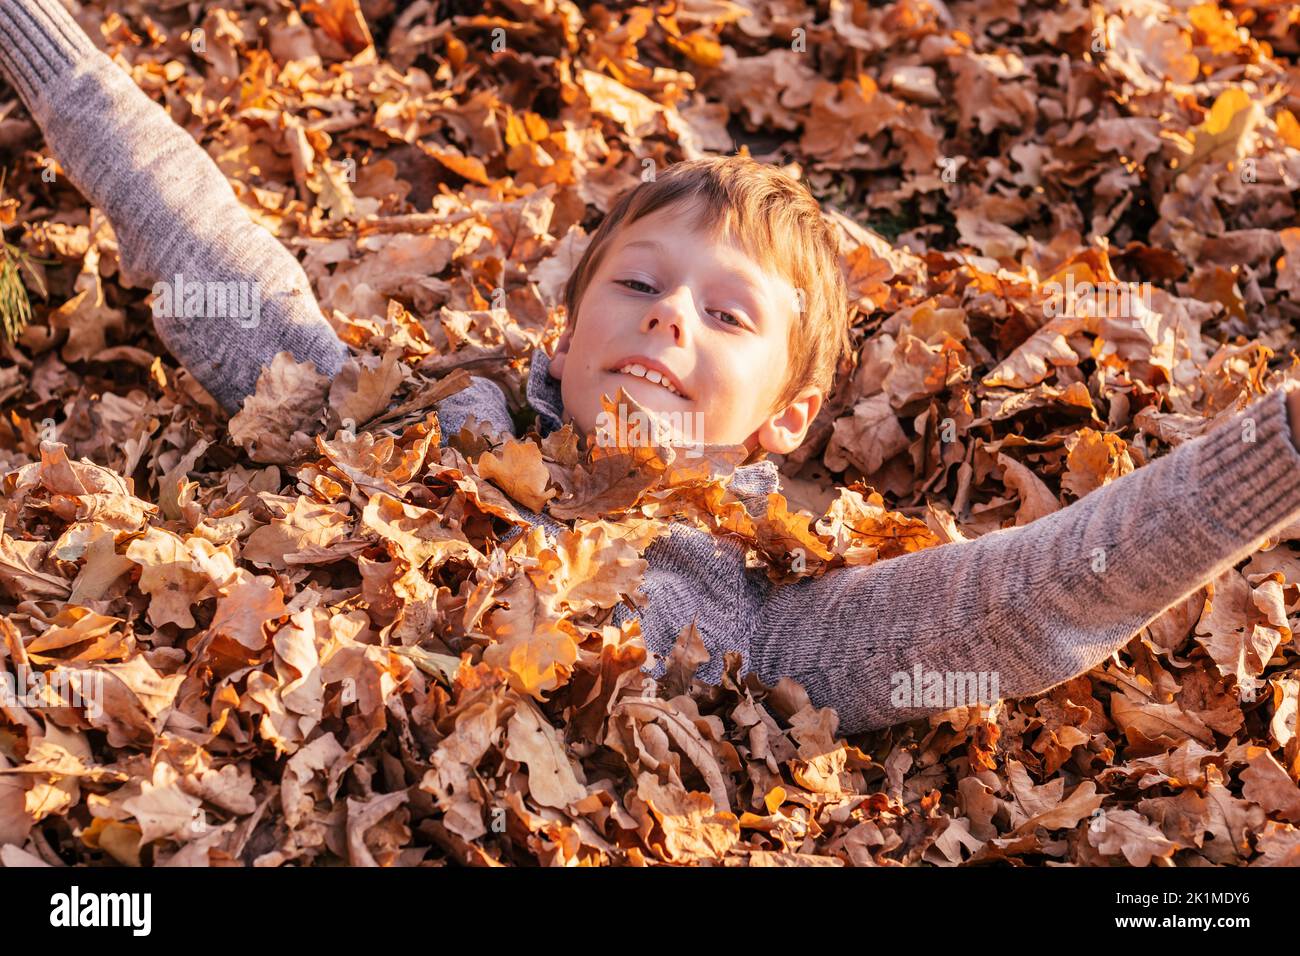 Ragazzo di 9-10 anni si trova sepolto in foglie di rovere giallo autunno nel parco in raggi di sole e sorrisi. Bambino in maglione grigio gioca e si diverte Foto Stock